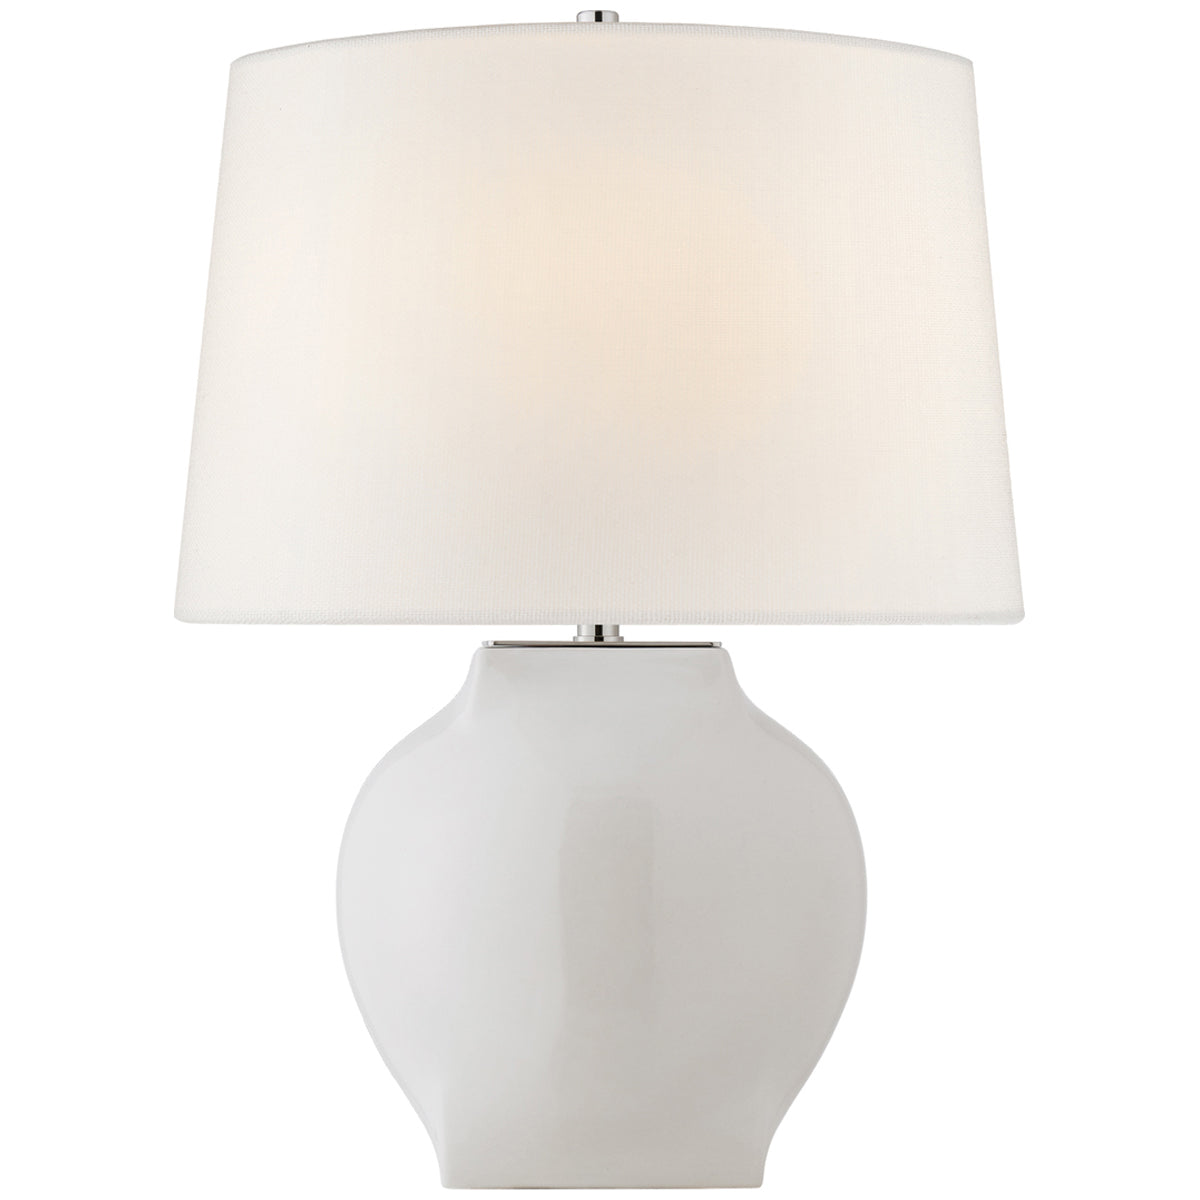 Visual Comfort Ilona Medium Table Lamp